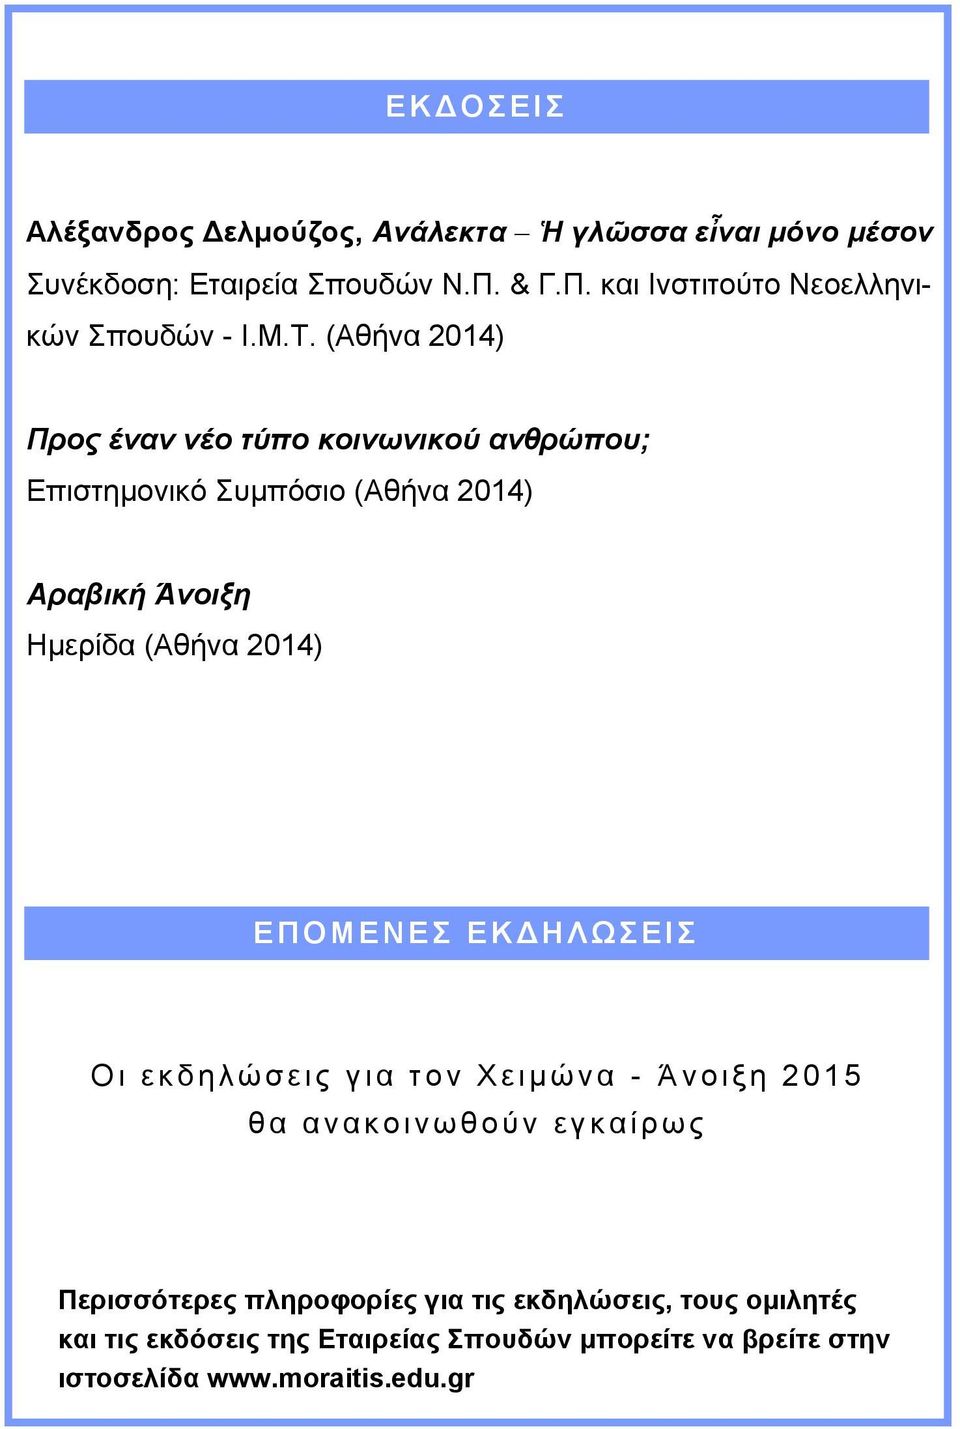 (Αθήνα 2014) Προς έναν νέο τύπο κοινωνικού ανθρώπου; Επιστημονικό Συμπόσιο (Αθήνα 2014) Αραβική Άνοιξη Ημερίδα (Αθήνα 2014) Ε ΠΟΜΕΝΕΣ ΕΚΔ